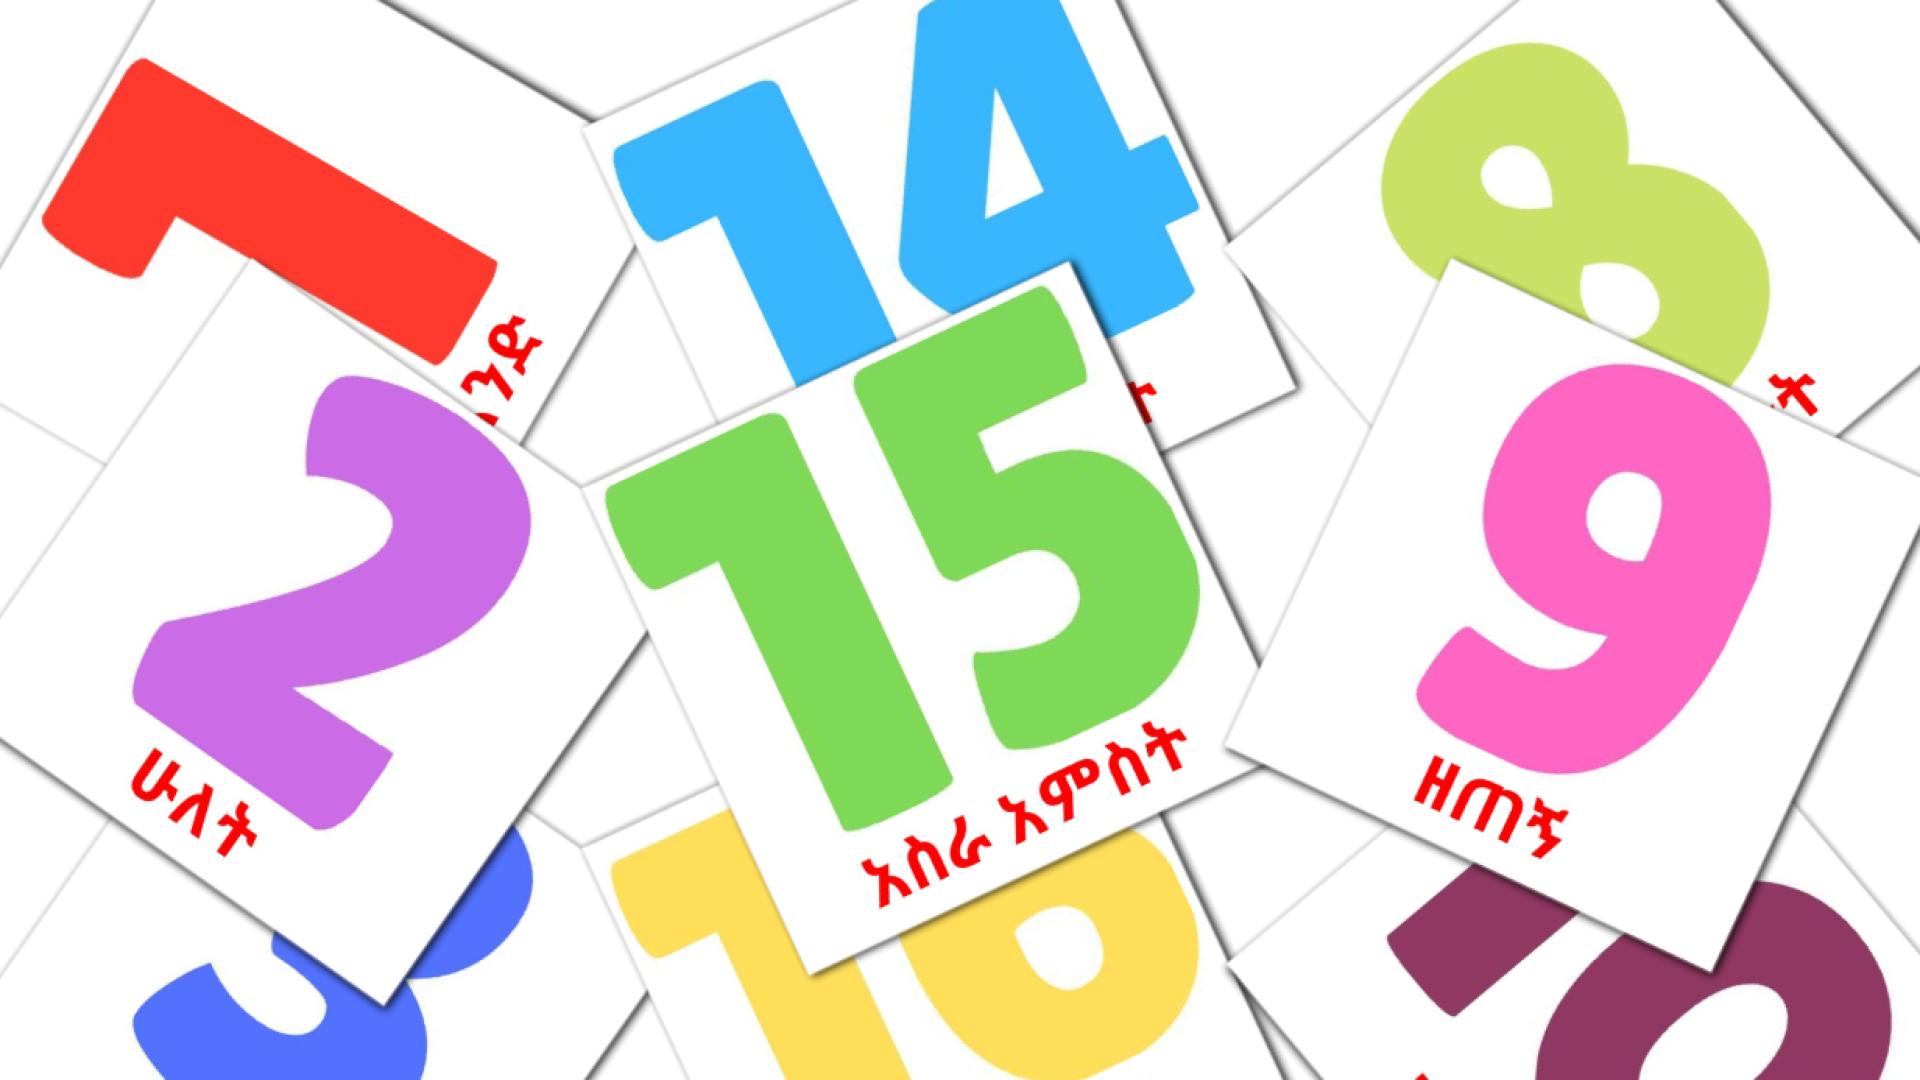 Des Nombres (1-20) - cartes de vocabulaire amharique